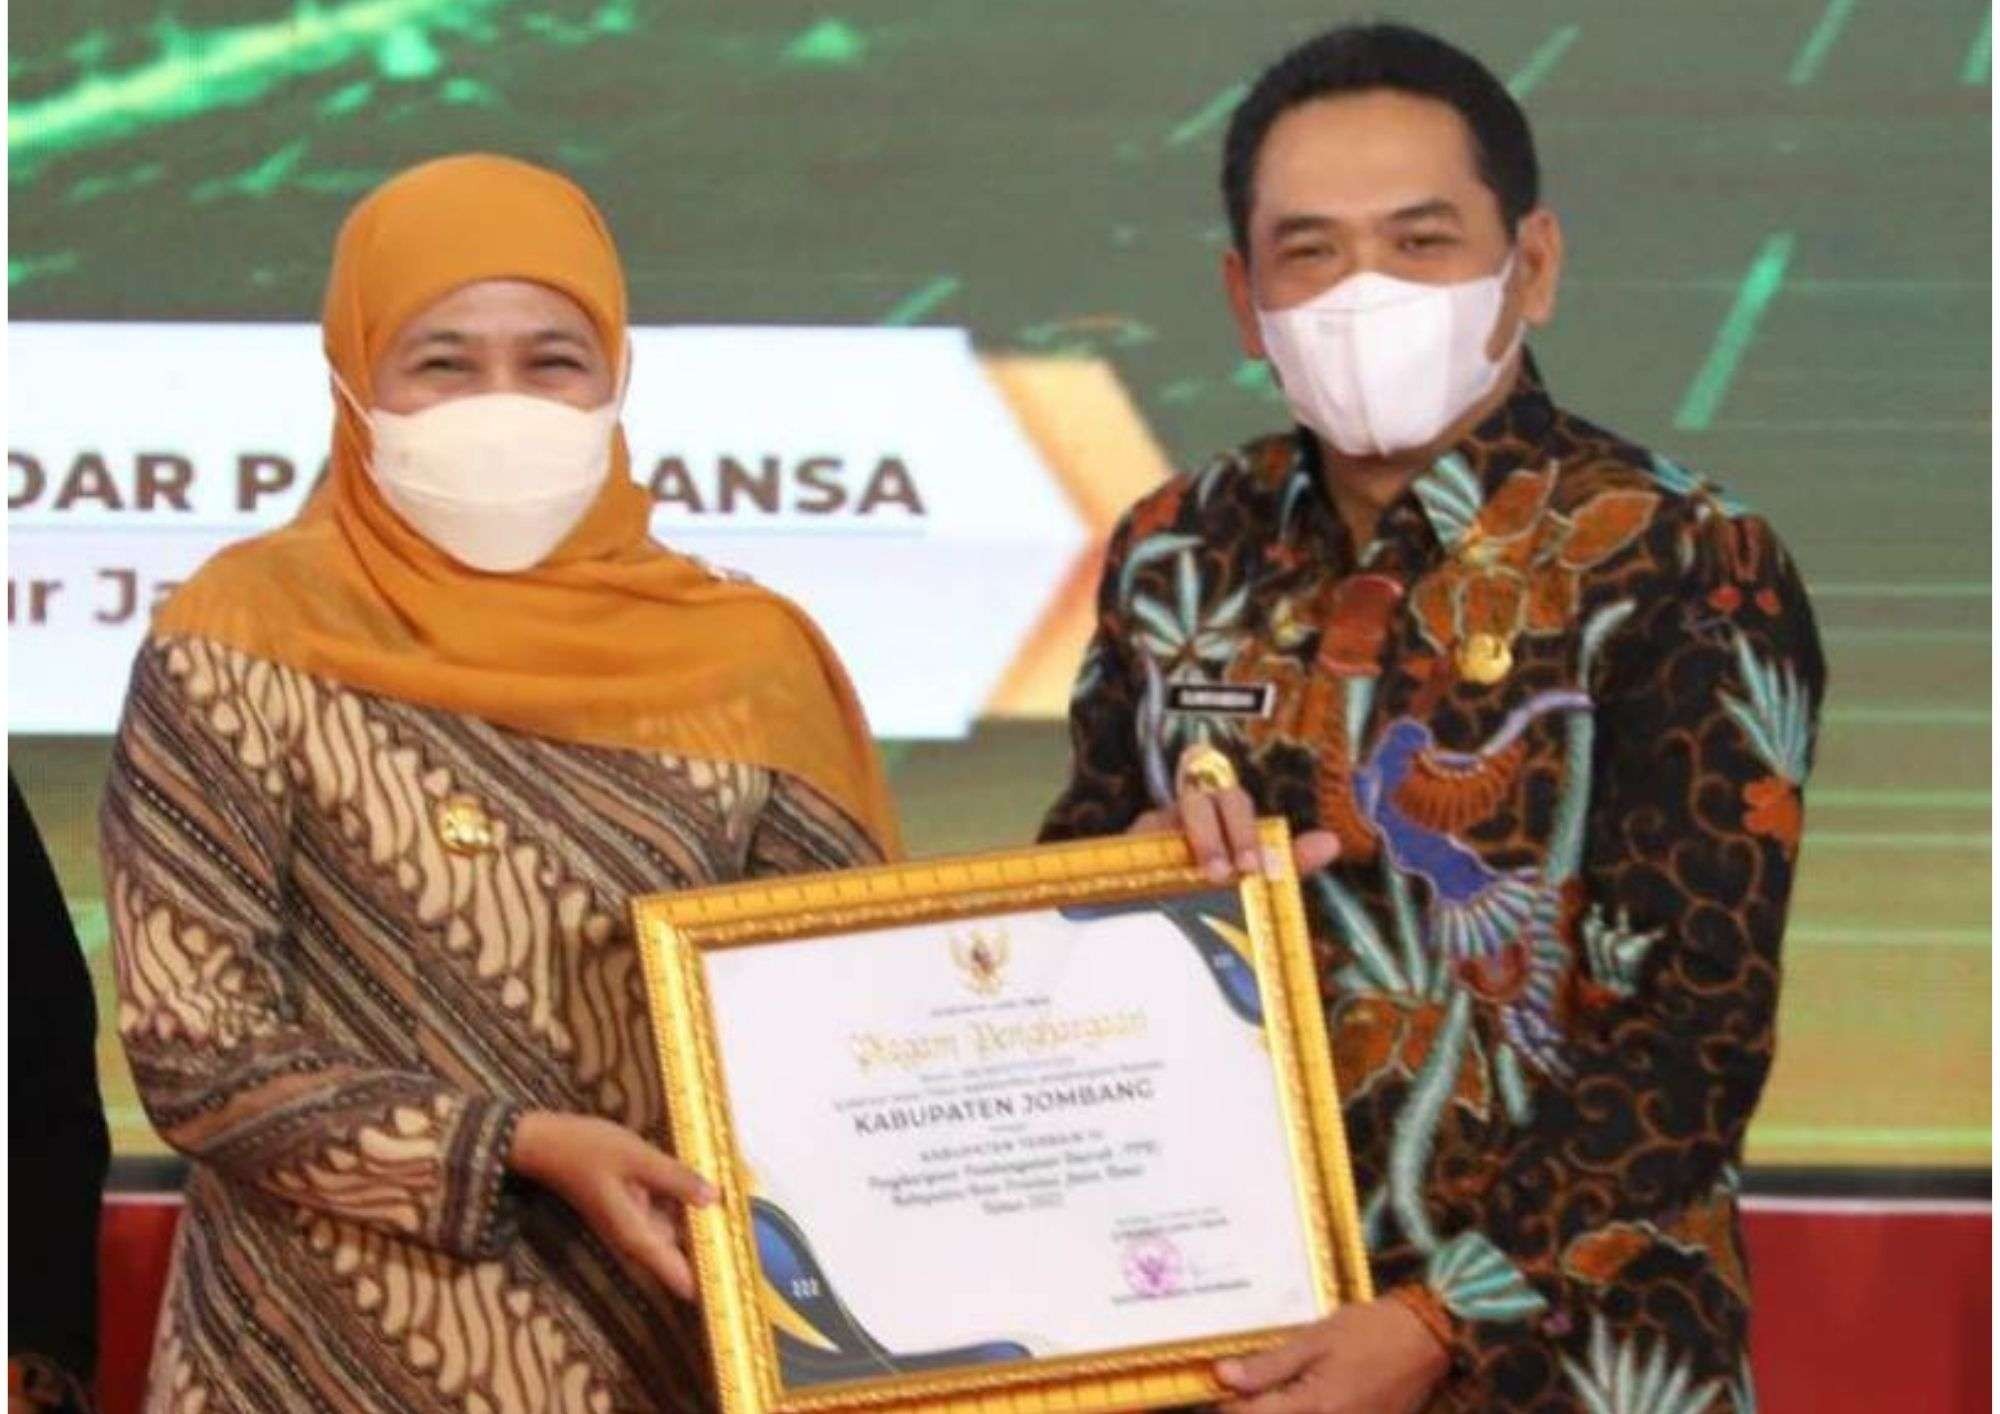 Penyerahan penghargaan dari Gubernur Khofifah Indar Parawansa kepada Wabup Sumrambah tentang perencanaan dan pembangunan daerah di Kabupaten Jombang, dengan predikat terbaik ketiga se Provinsi Jawa Timur. (Foto: Istimewa)